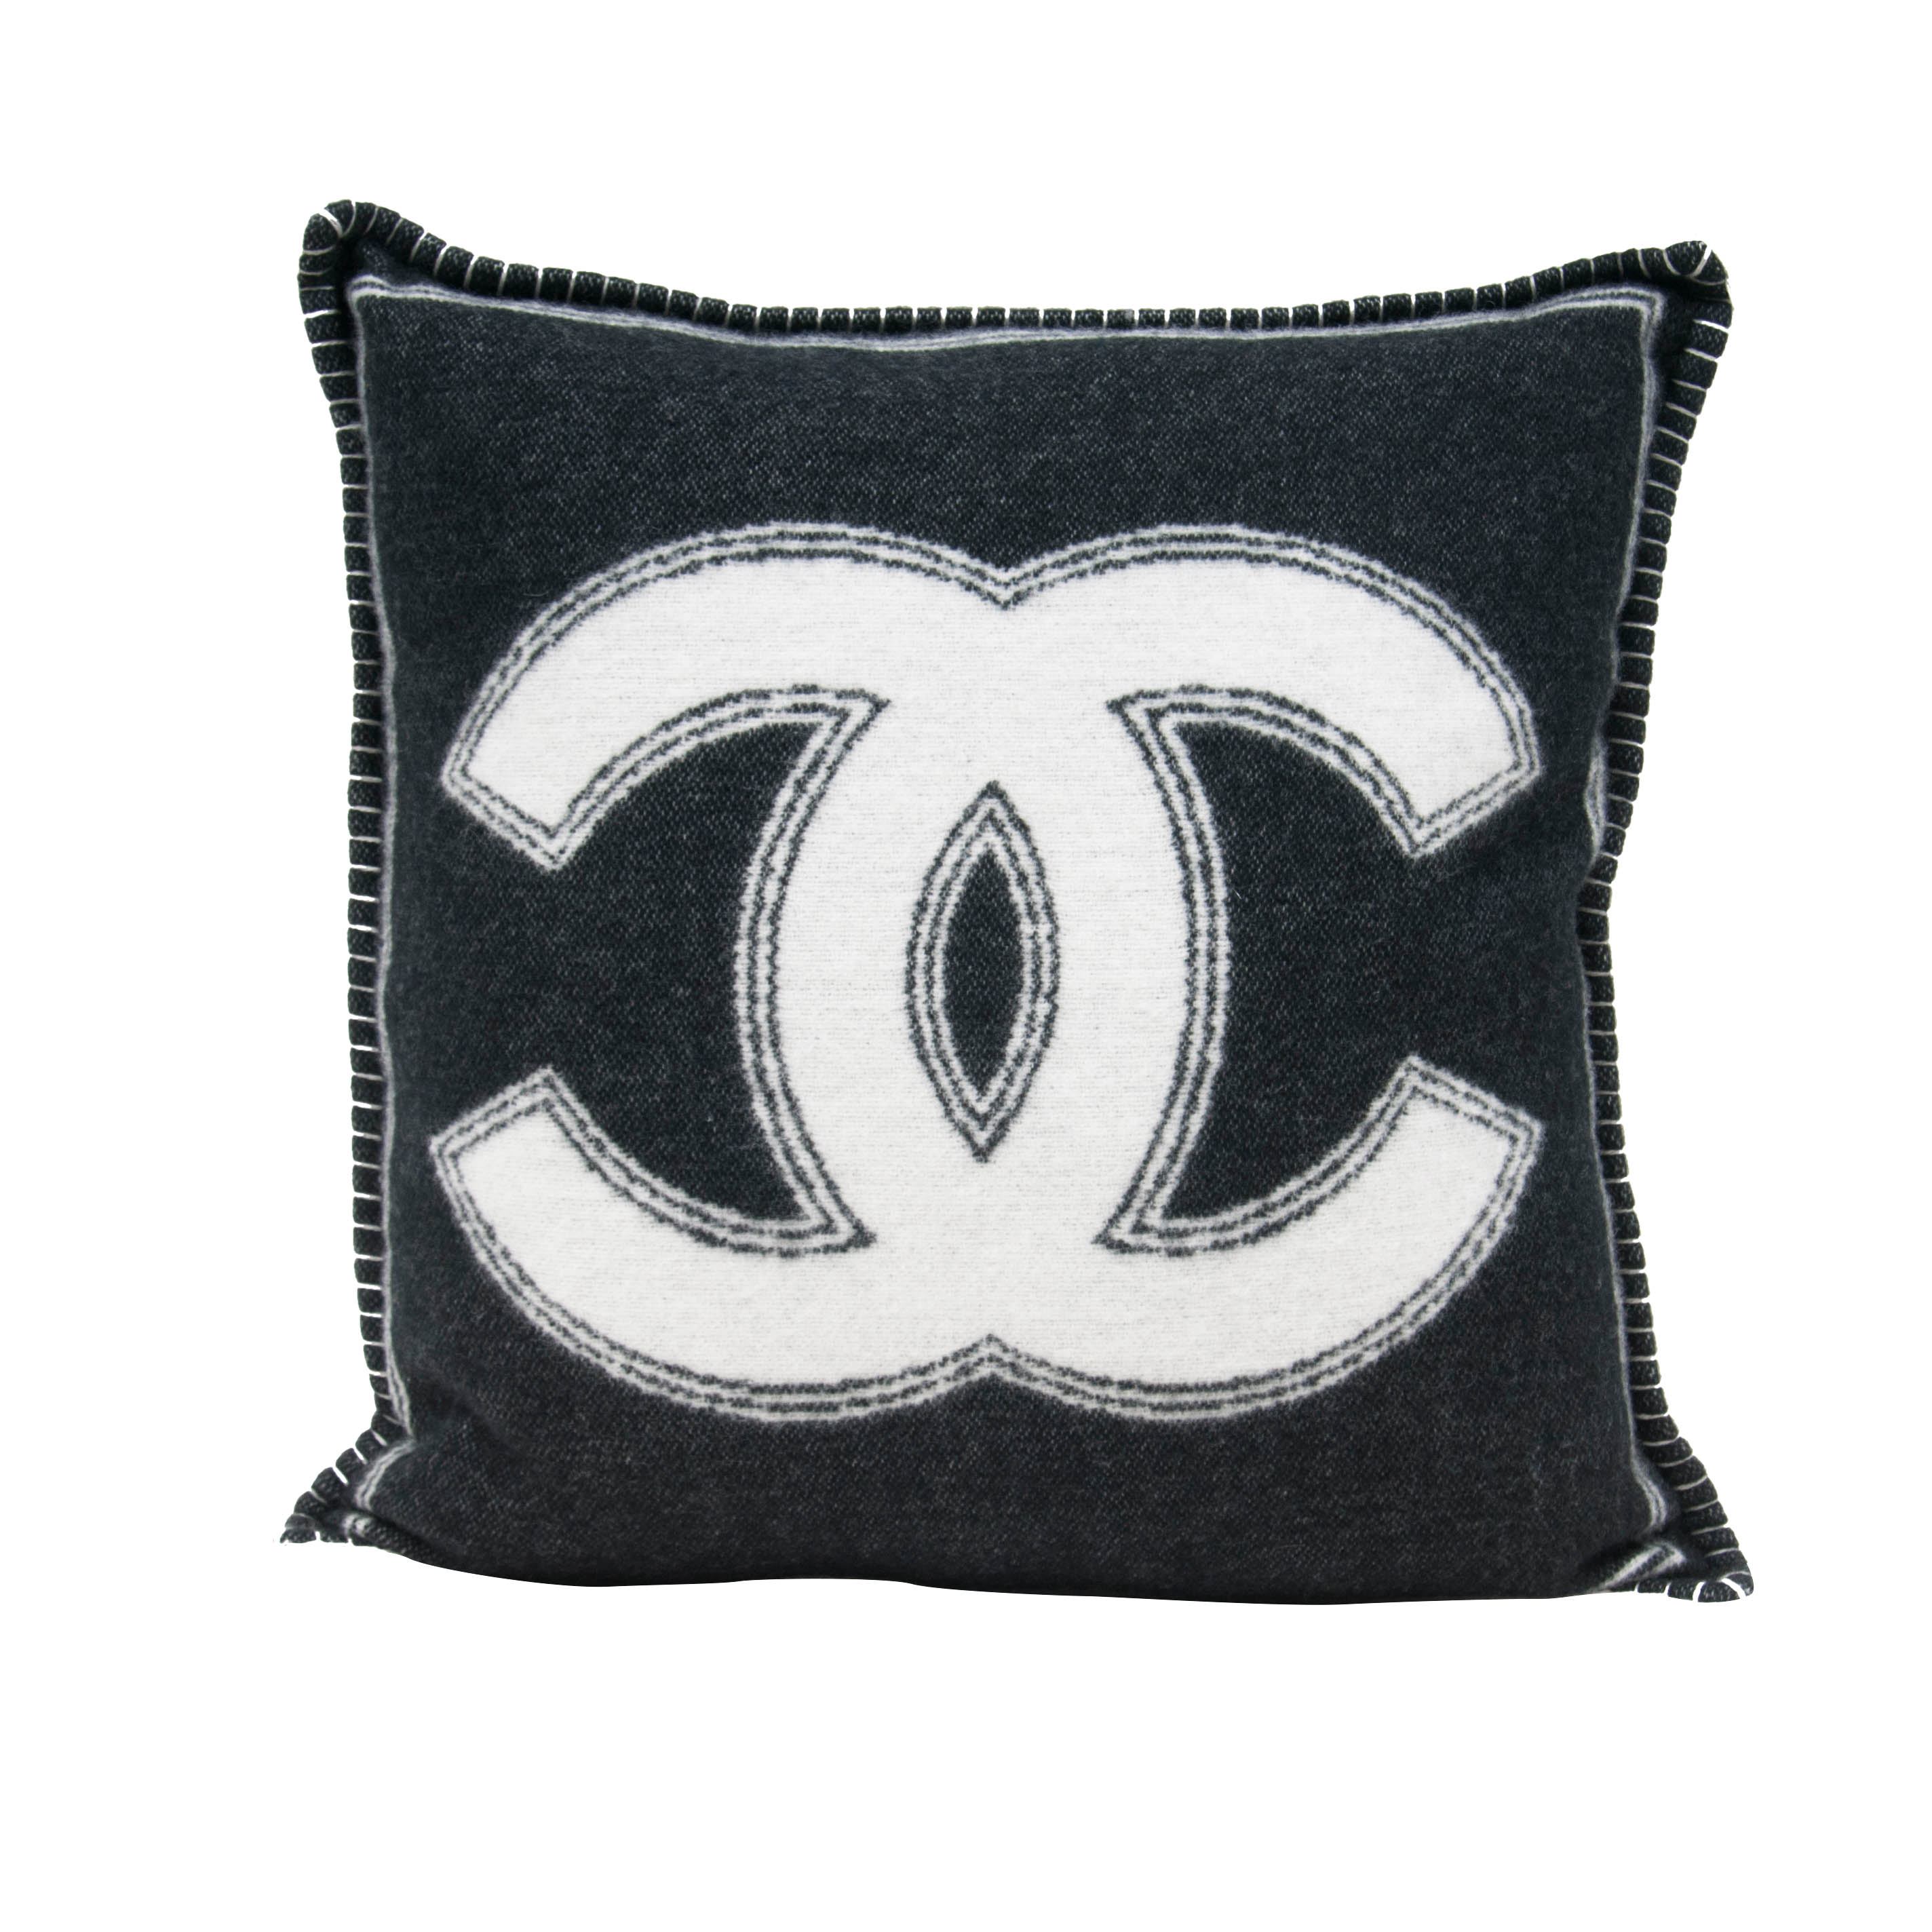 chanel cc pillows decorative throw pillows